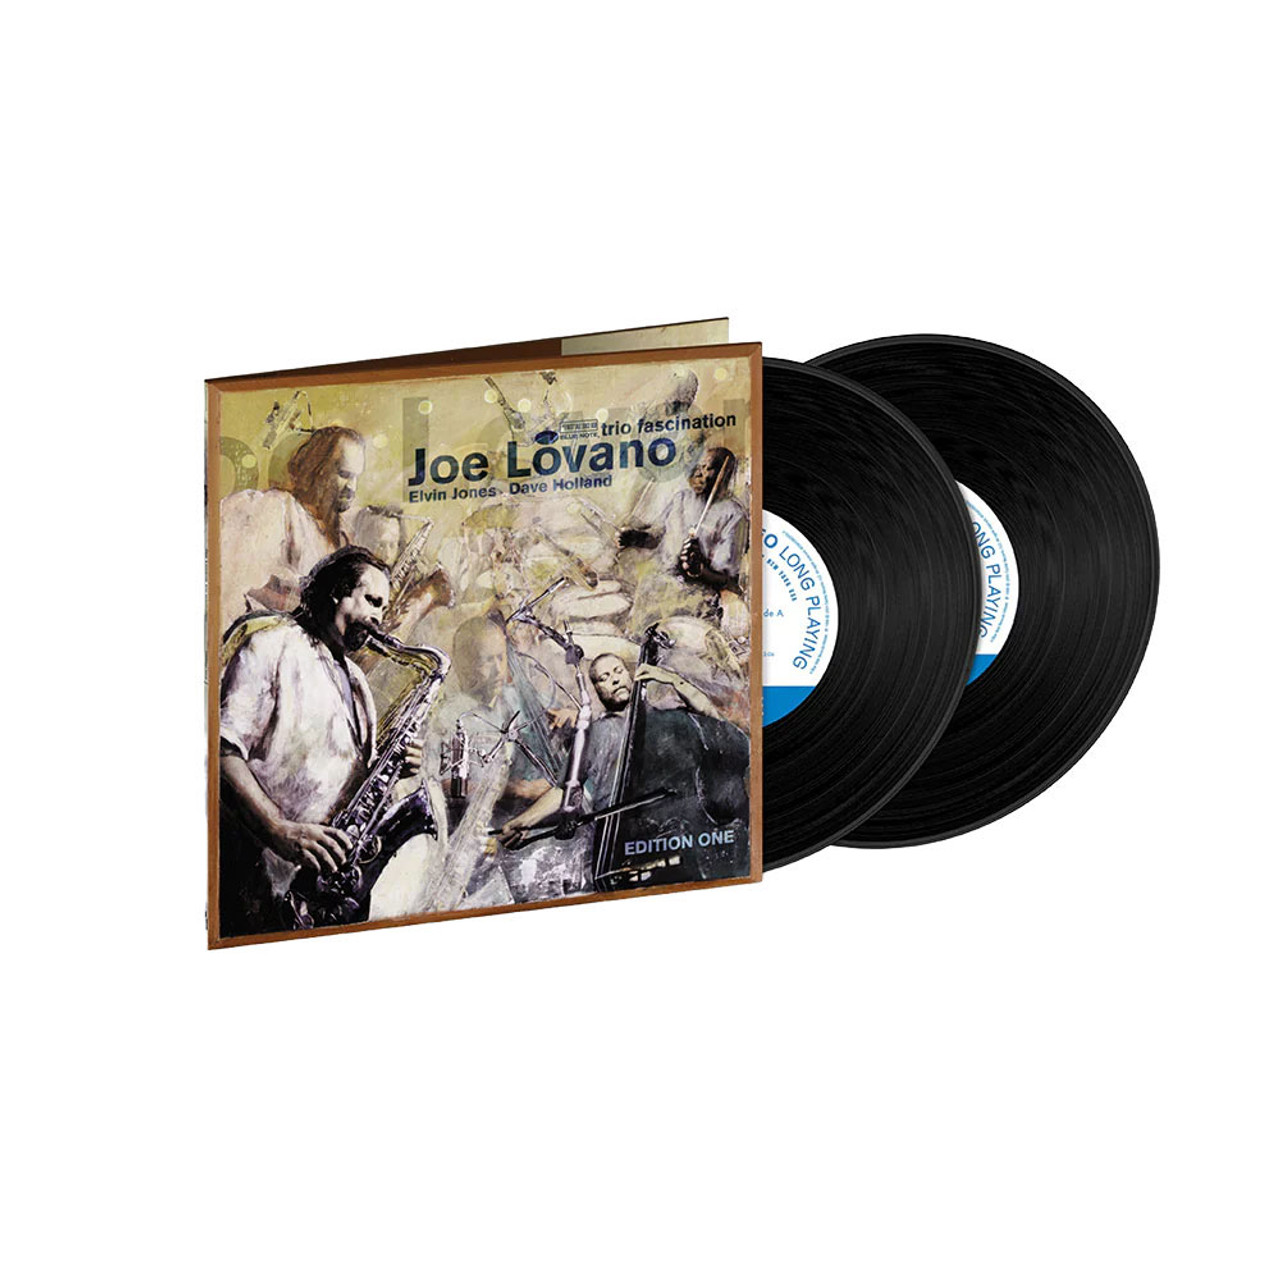 Joe Lovano "Trio Fascination"